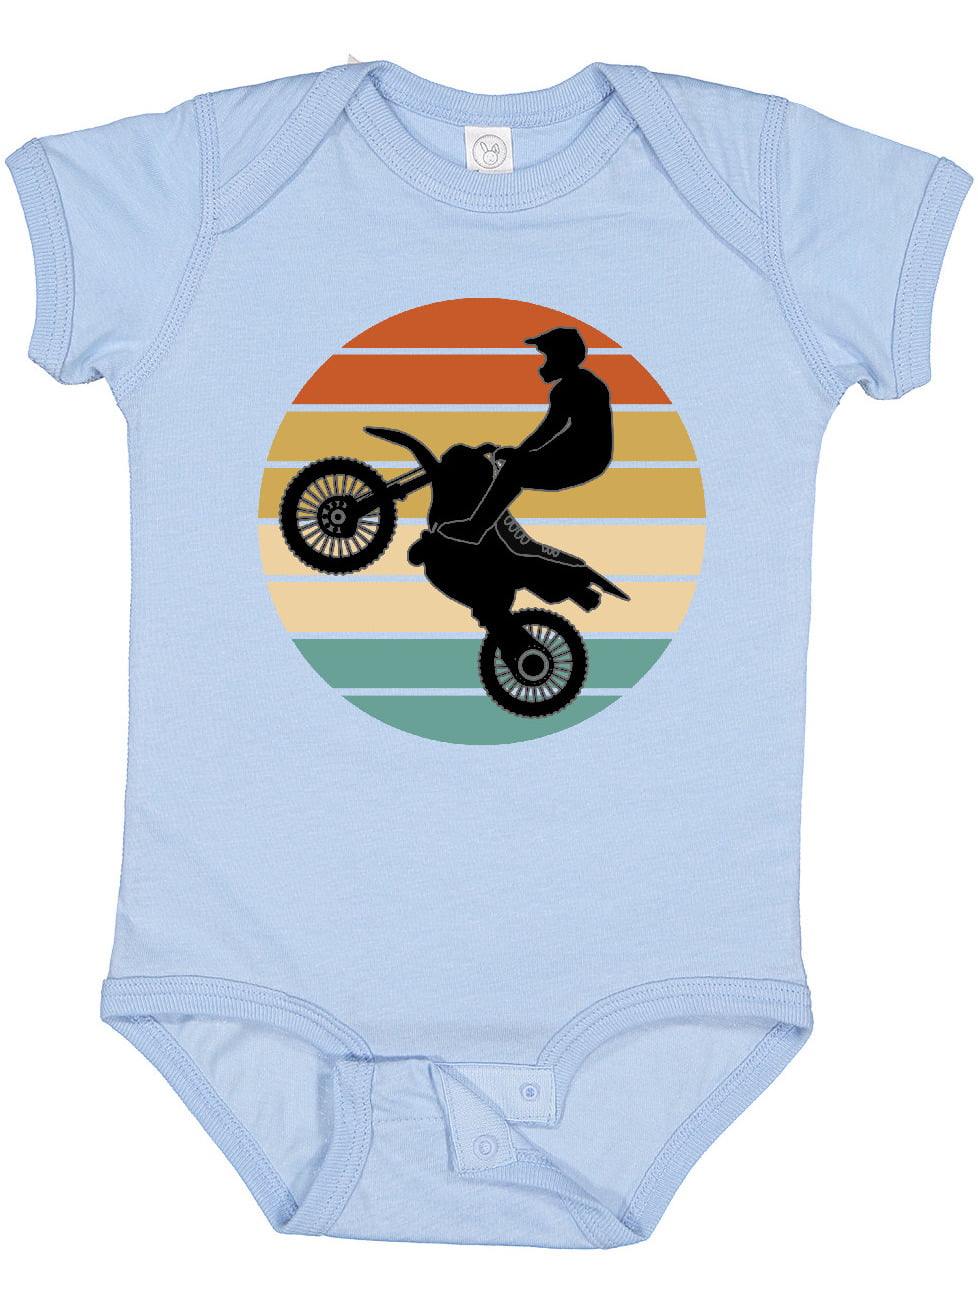 Moto newborn picture dirt bikes motocross baby  Baby boy newborn pictures,  Newborn pictures, Baby boy newborn